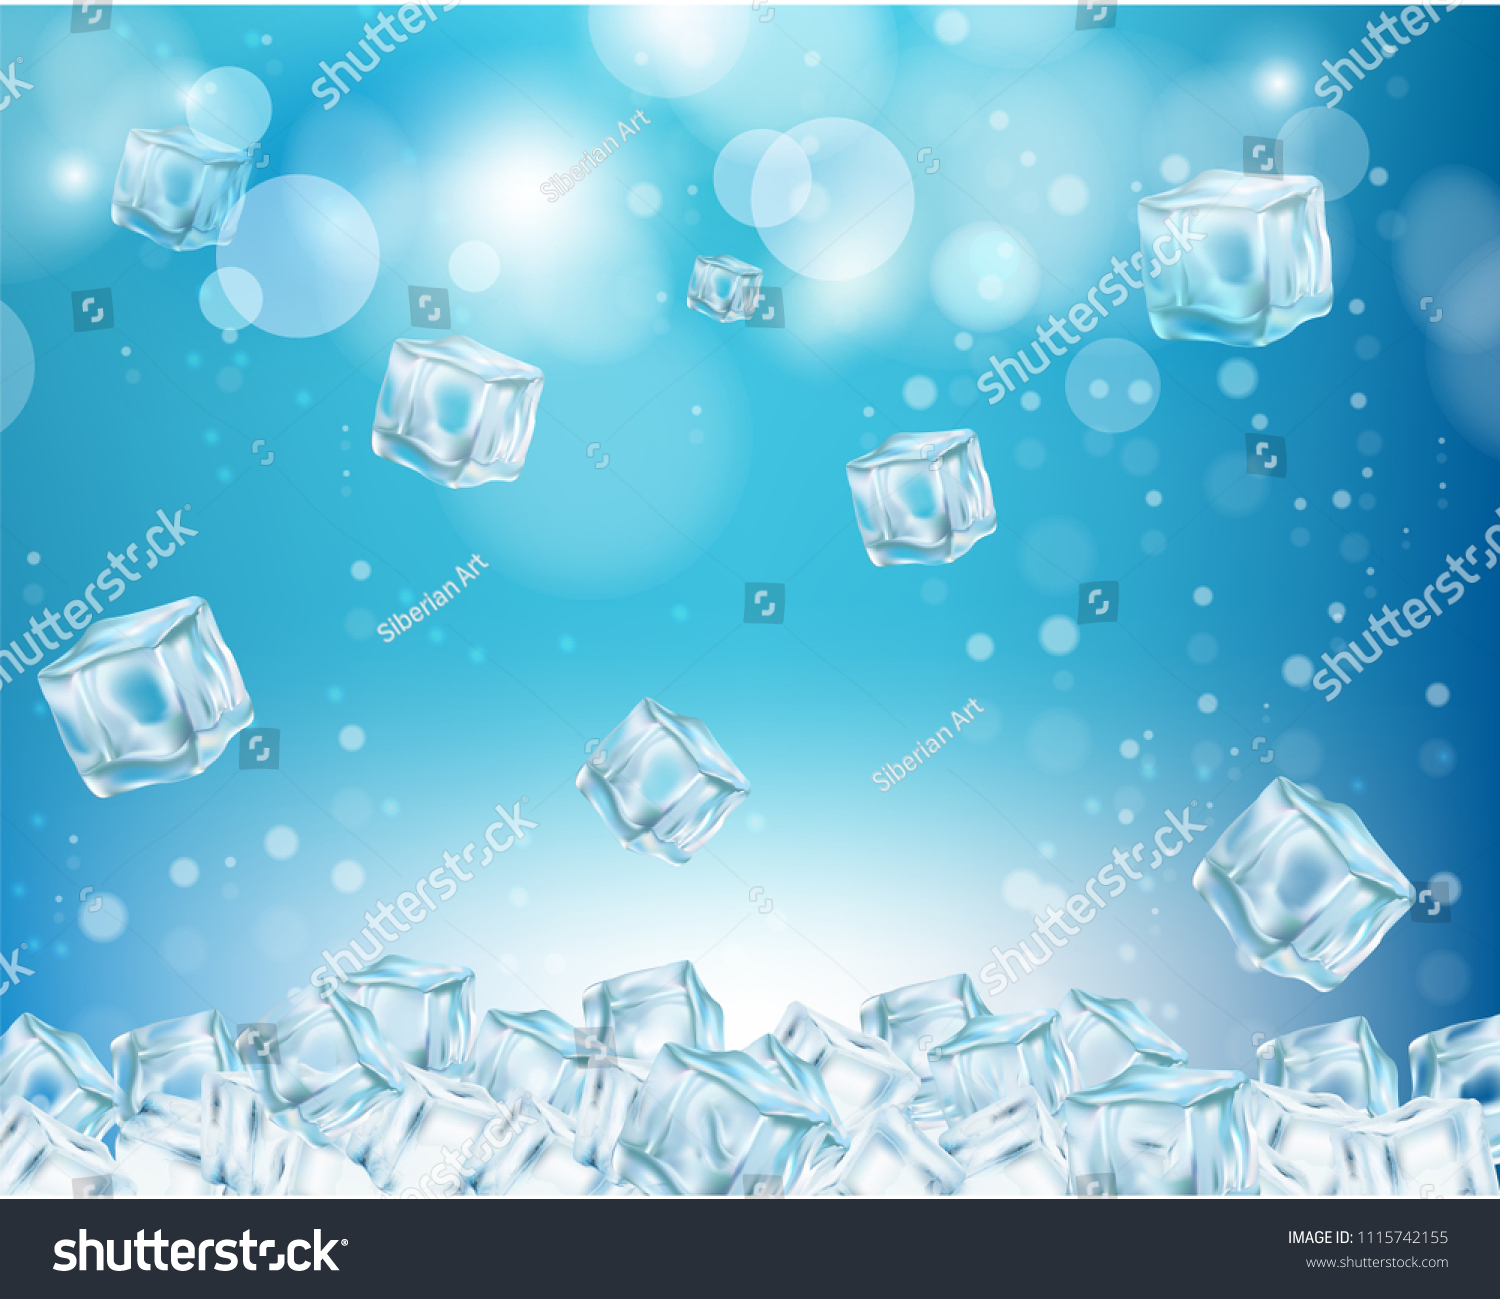 氷の壁紙 ベクター画像のリアルなイラスト 抽象的な背景に凍った水立方体 のベクター画像素材 ロイヤリティフリー